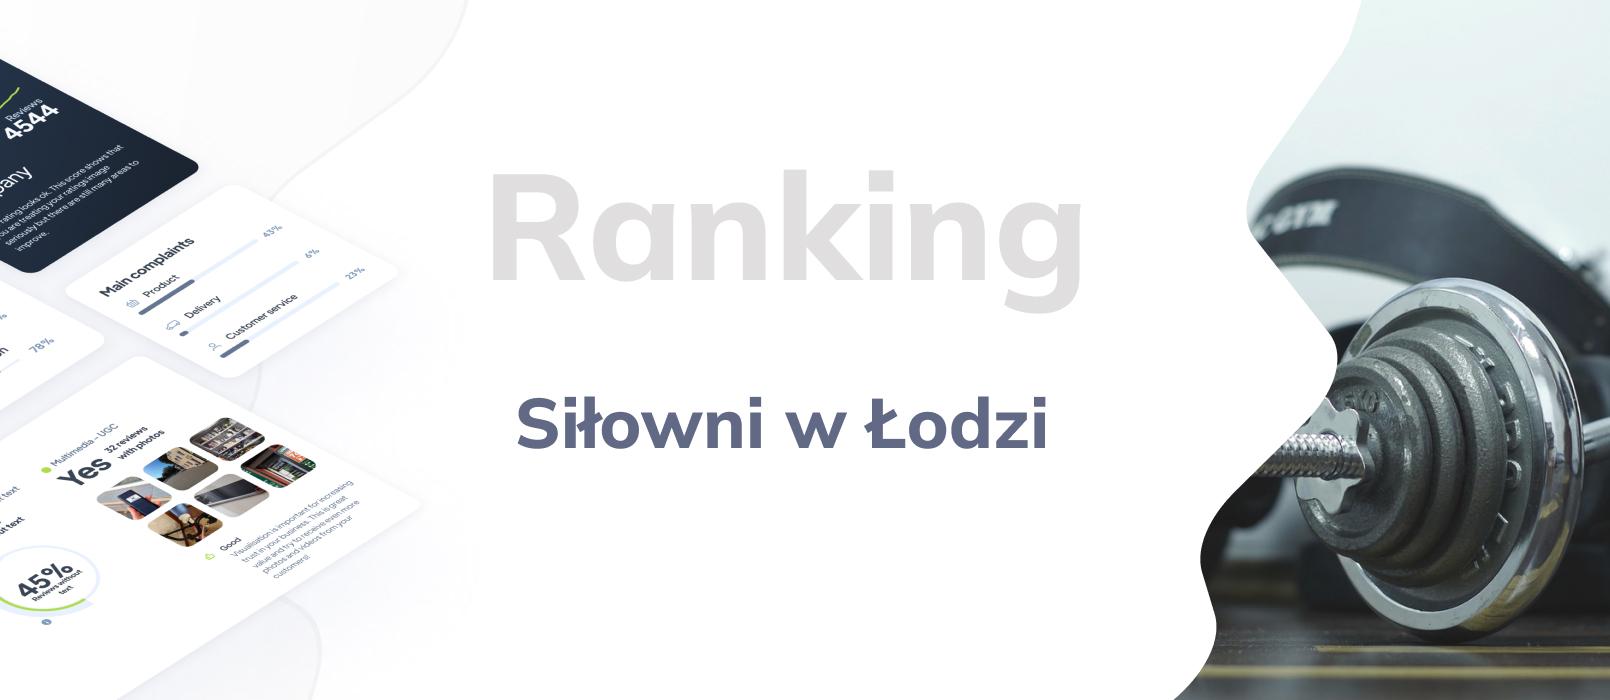 Siłownie w Łodzi -  ranking TOP 10